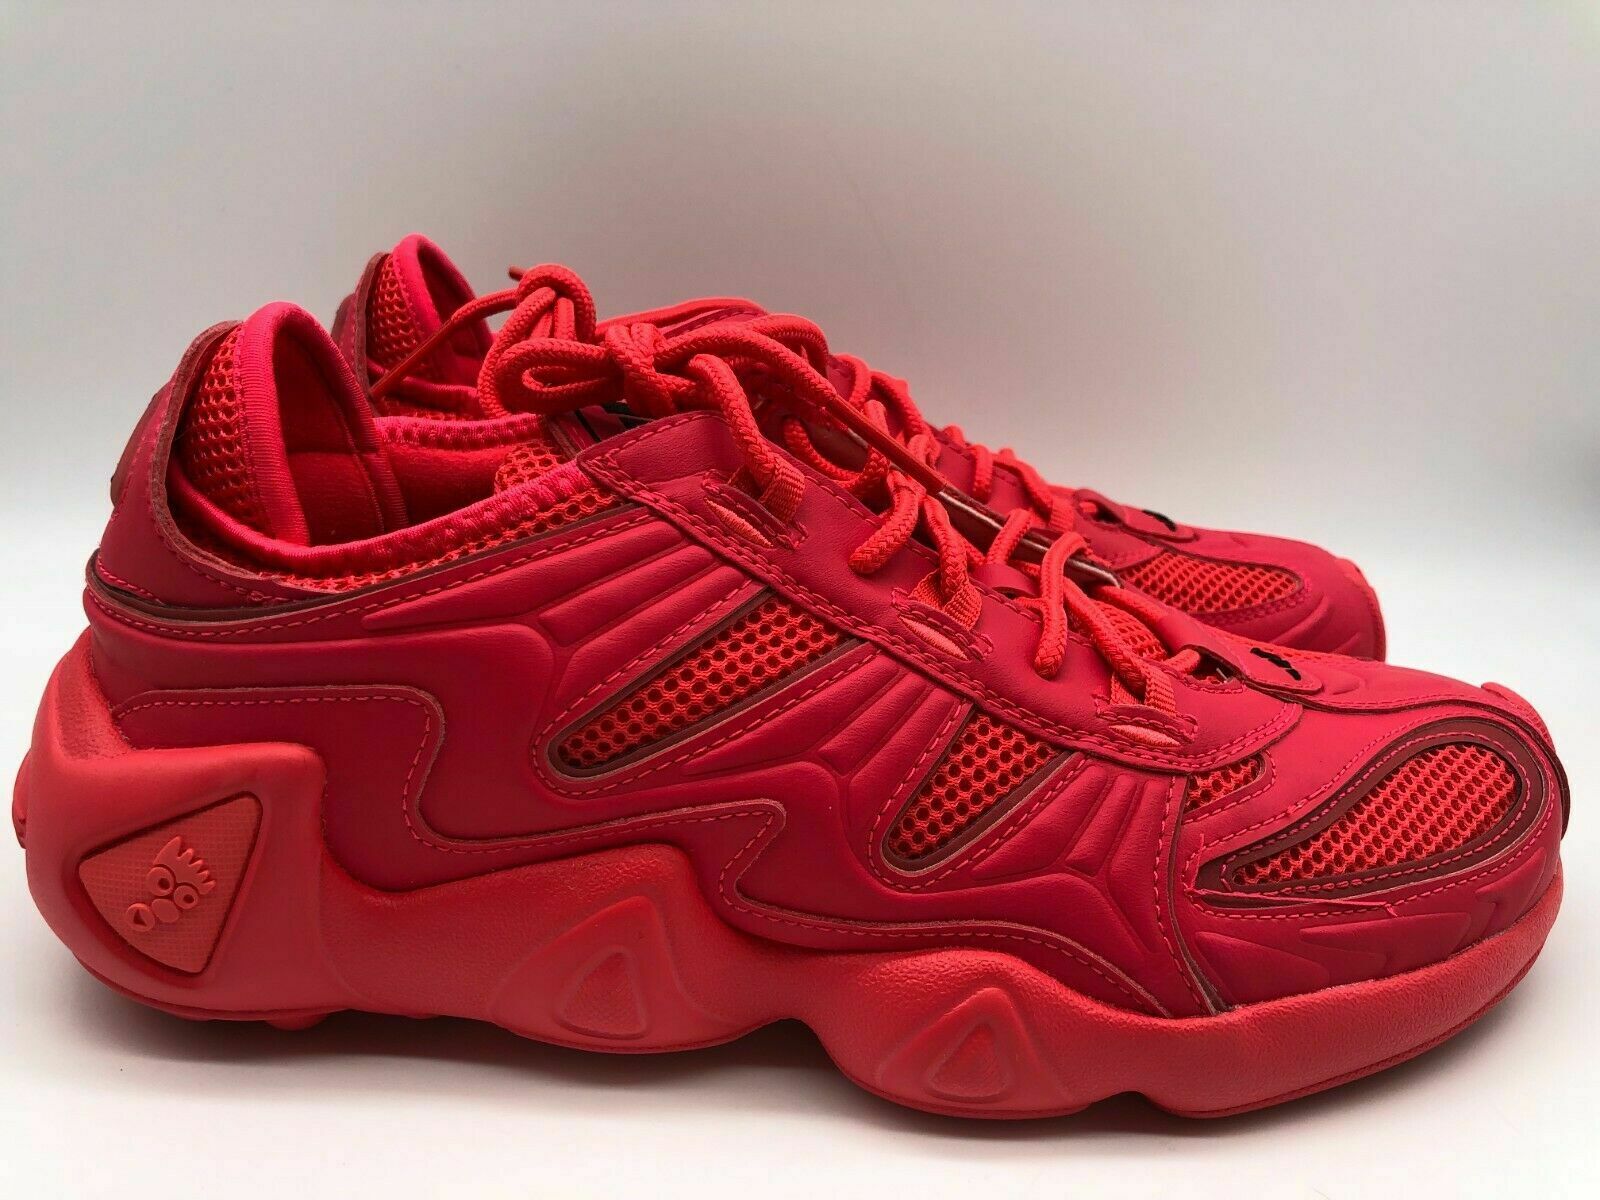 adidas Women's Originals FYW S-97 Shoes Red EE5329 Size 8.5